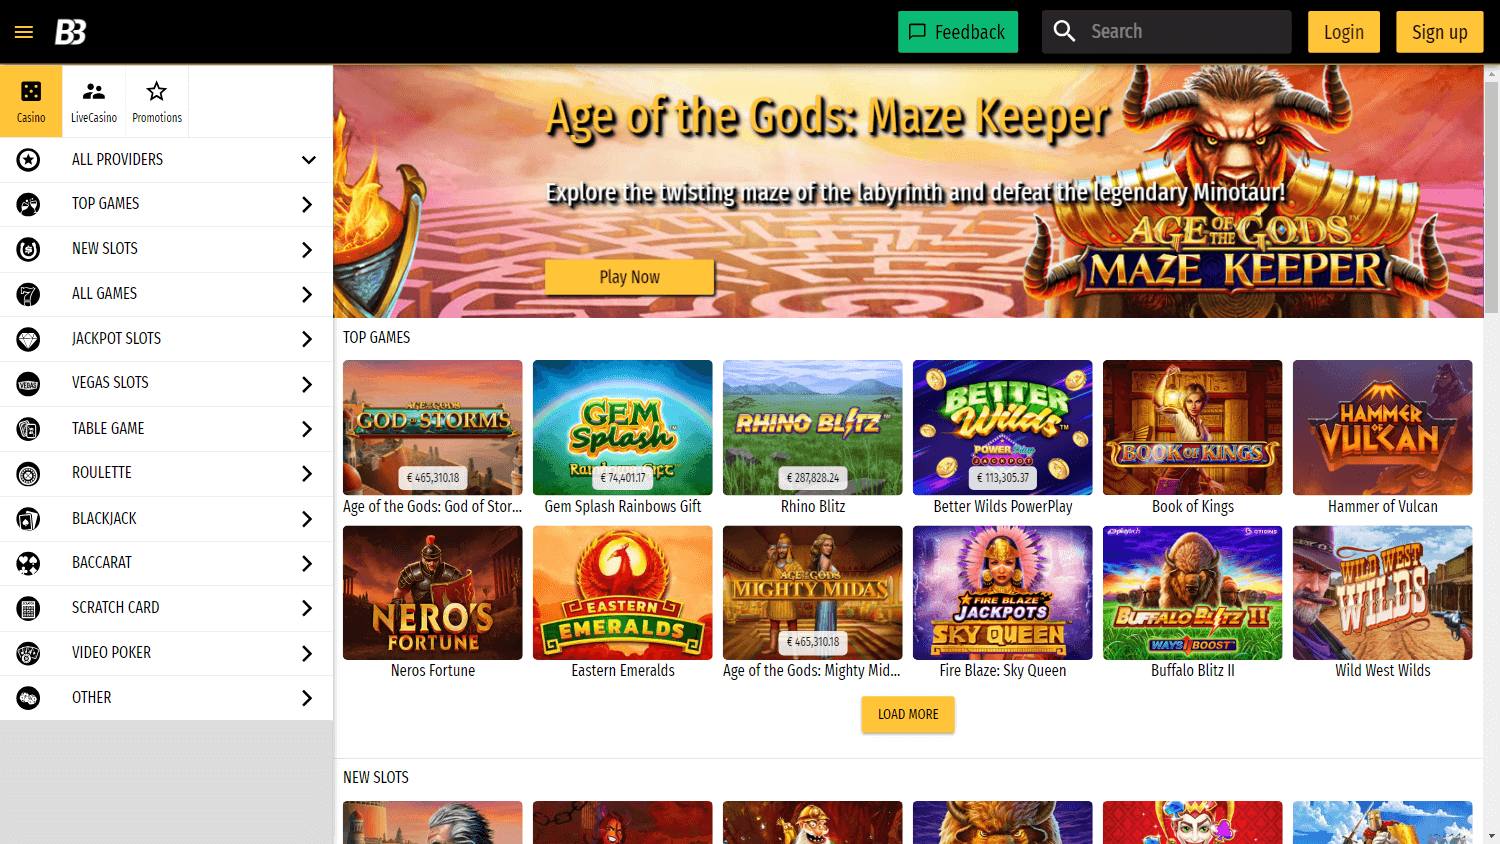 bonkersbet_casino_homepage_desktop